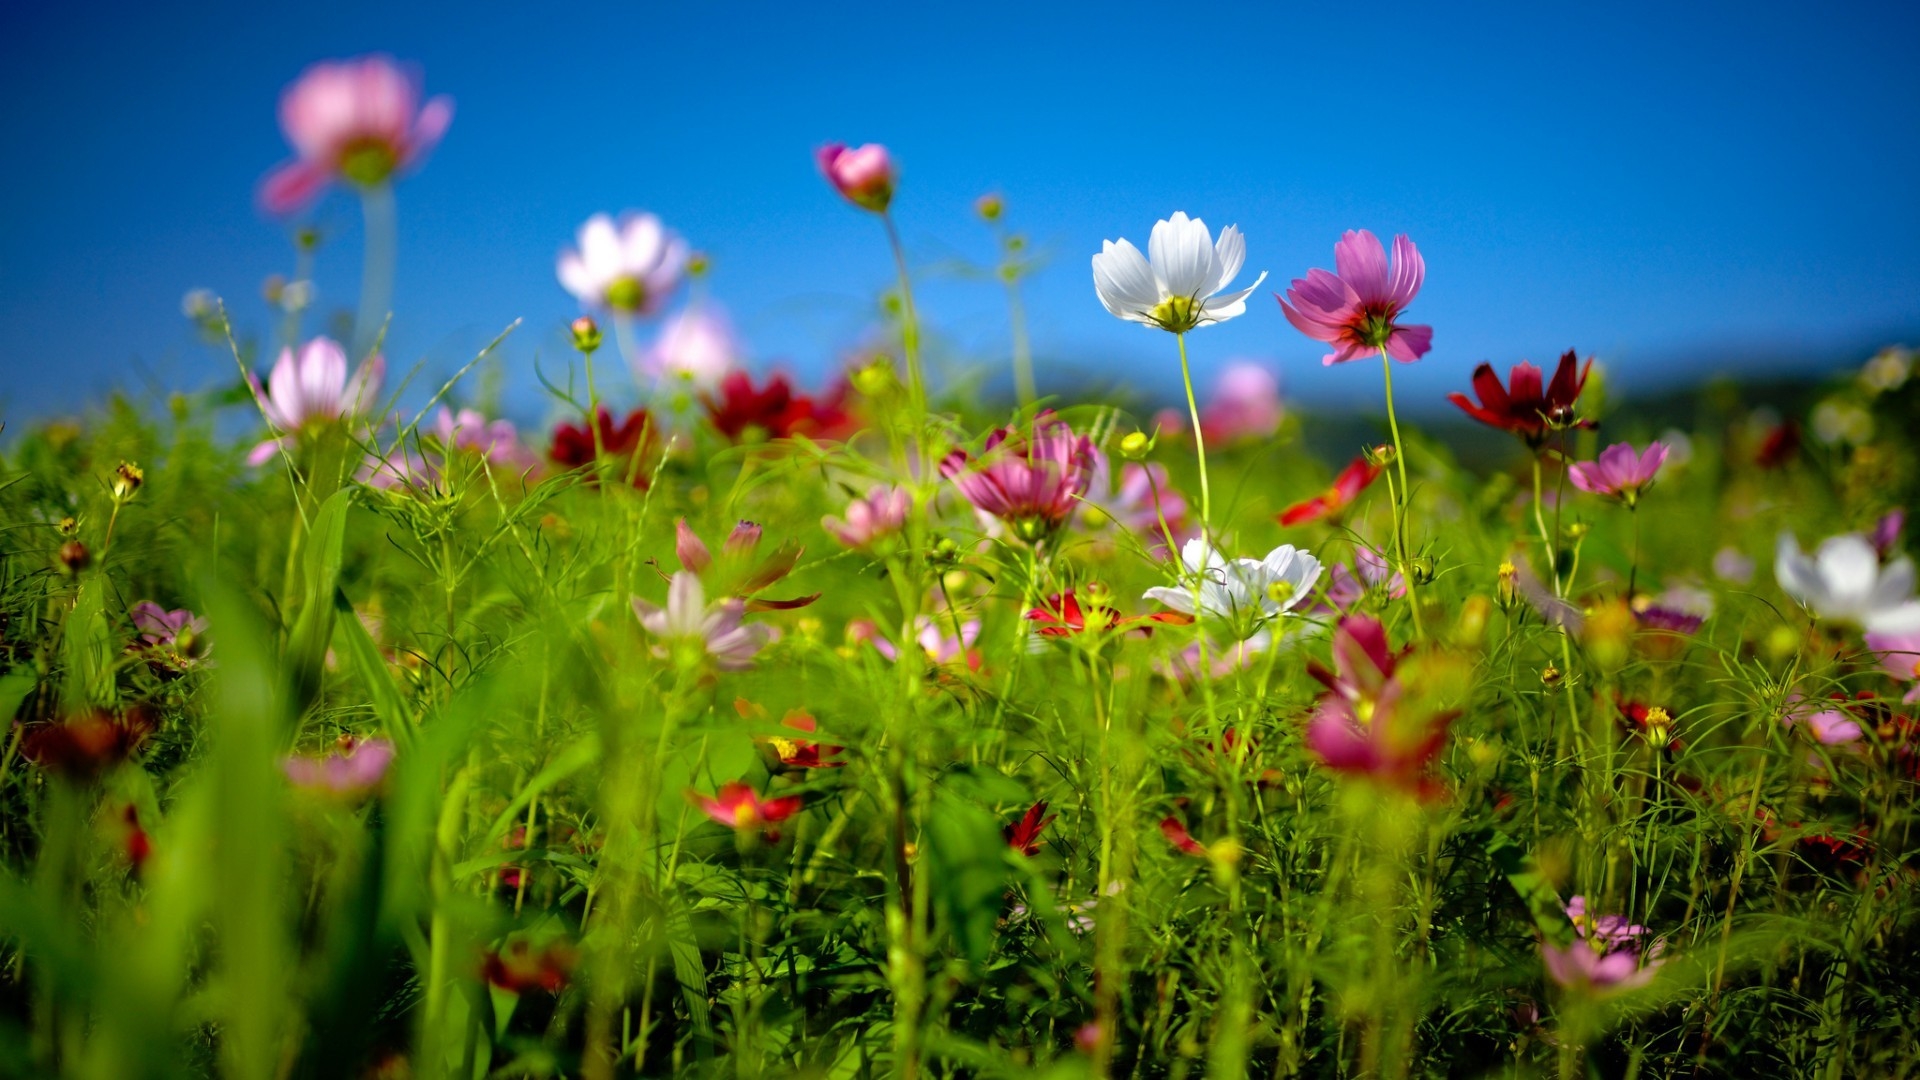 Spring Flower Land for 1920 x 1080 HDTV 1080p resolution